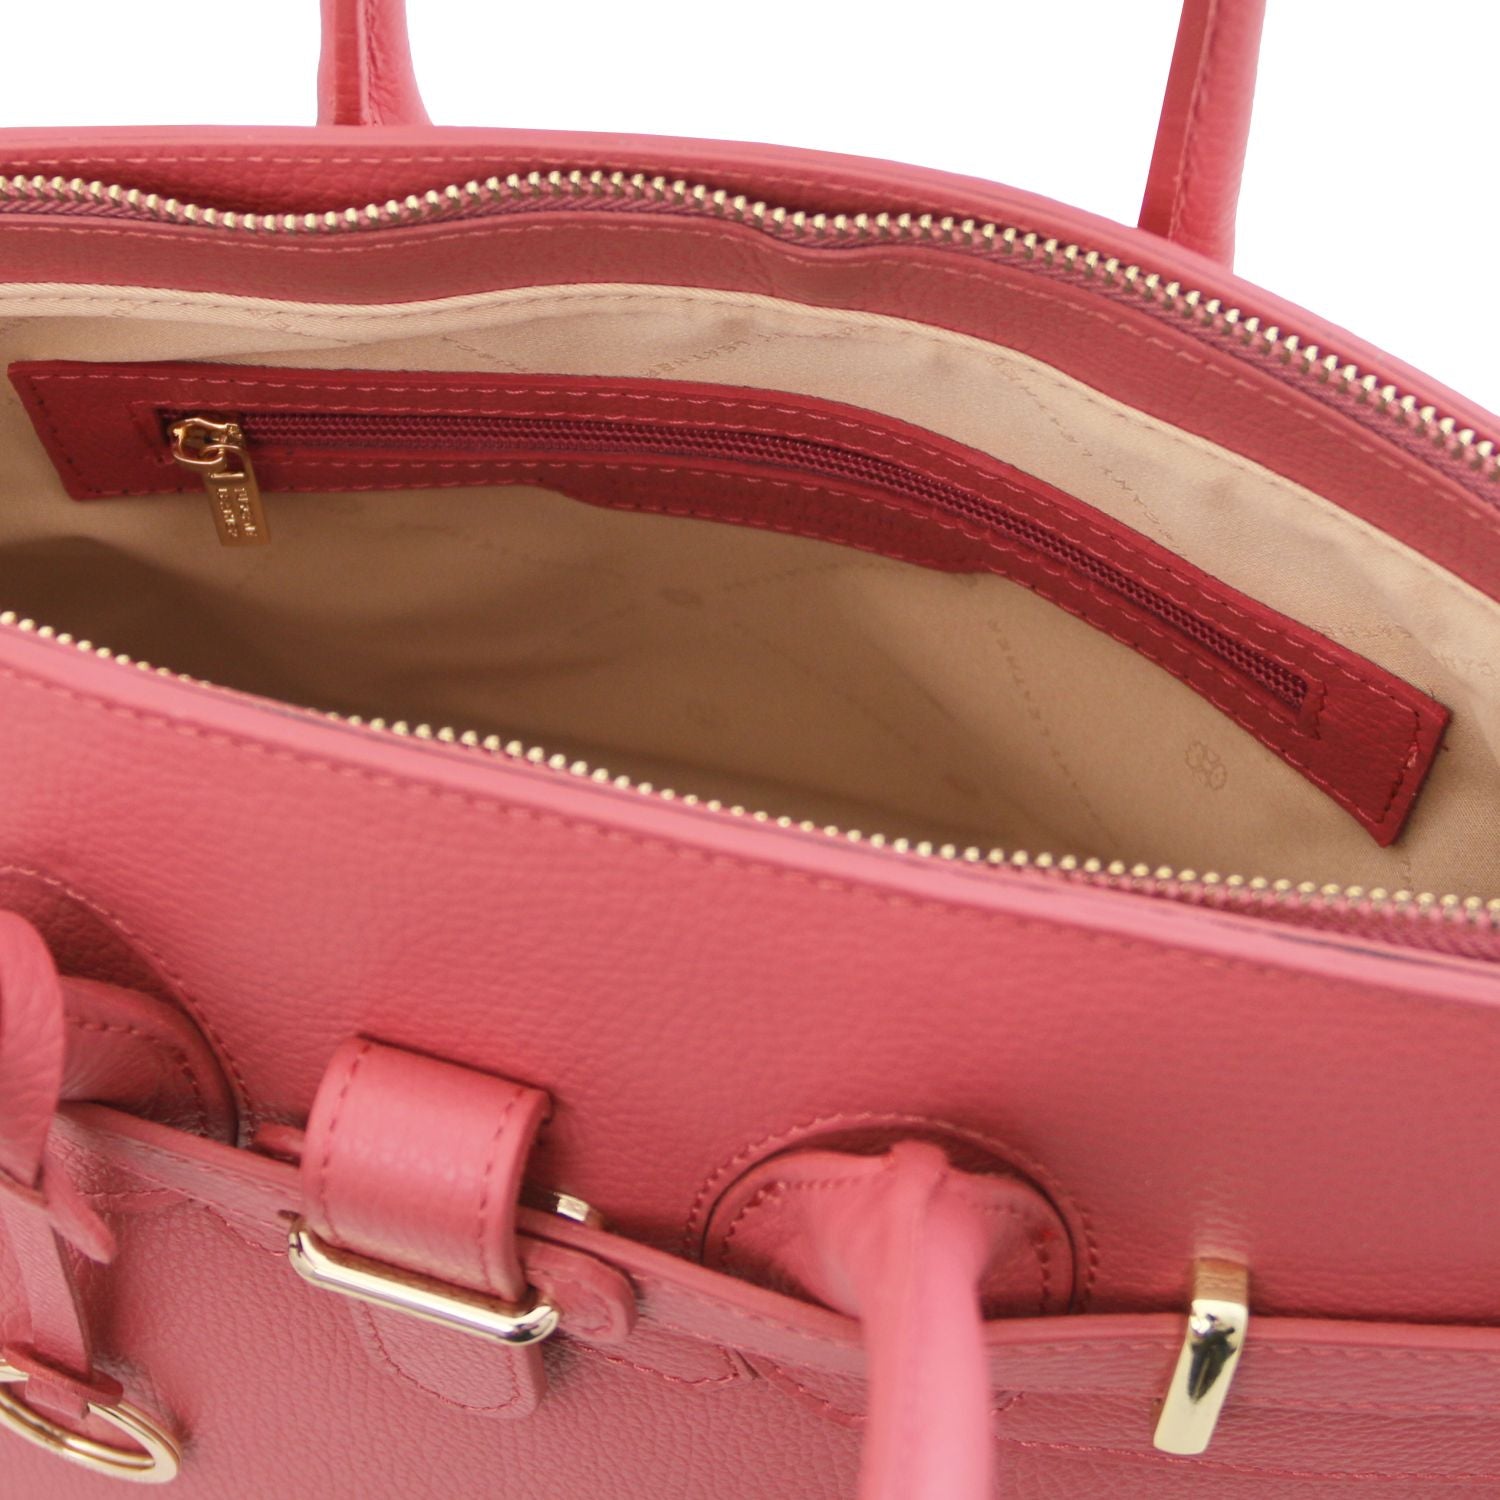 TL Bag - Handväska med Guldspännen